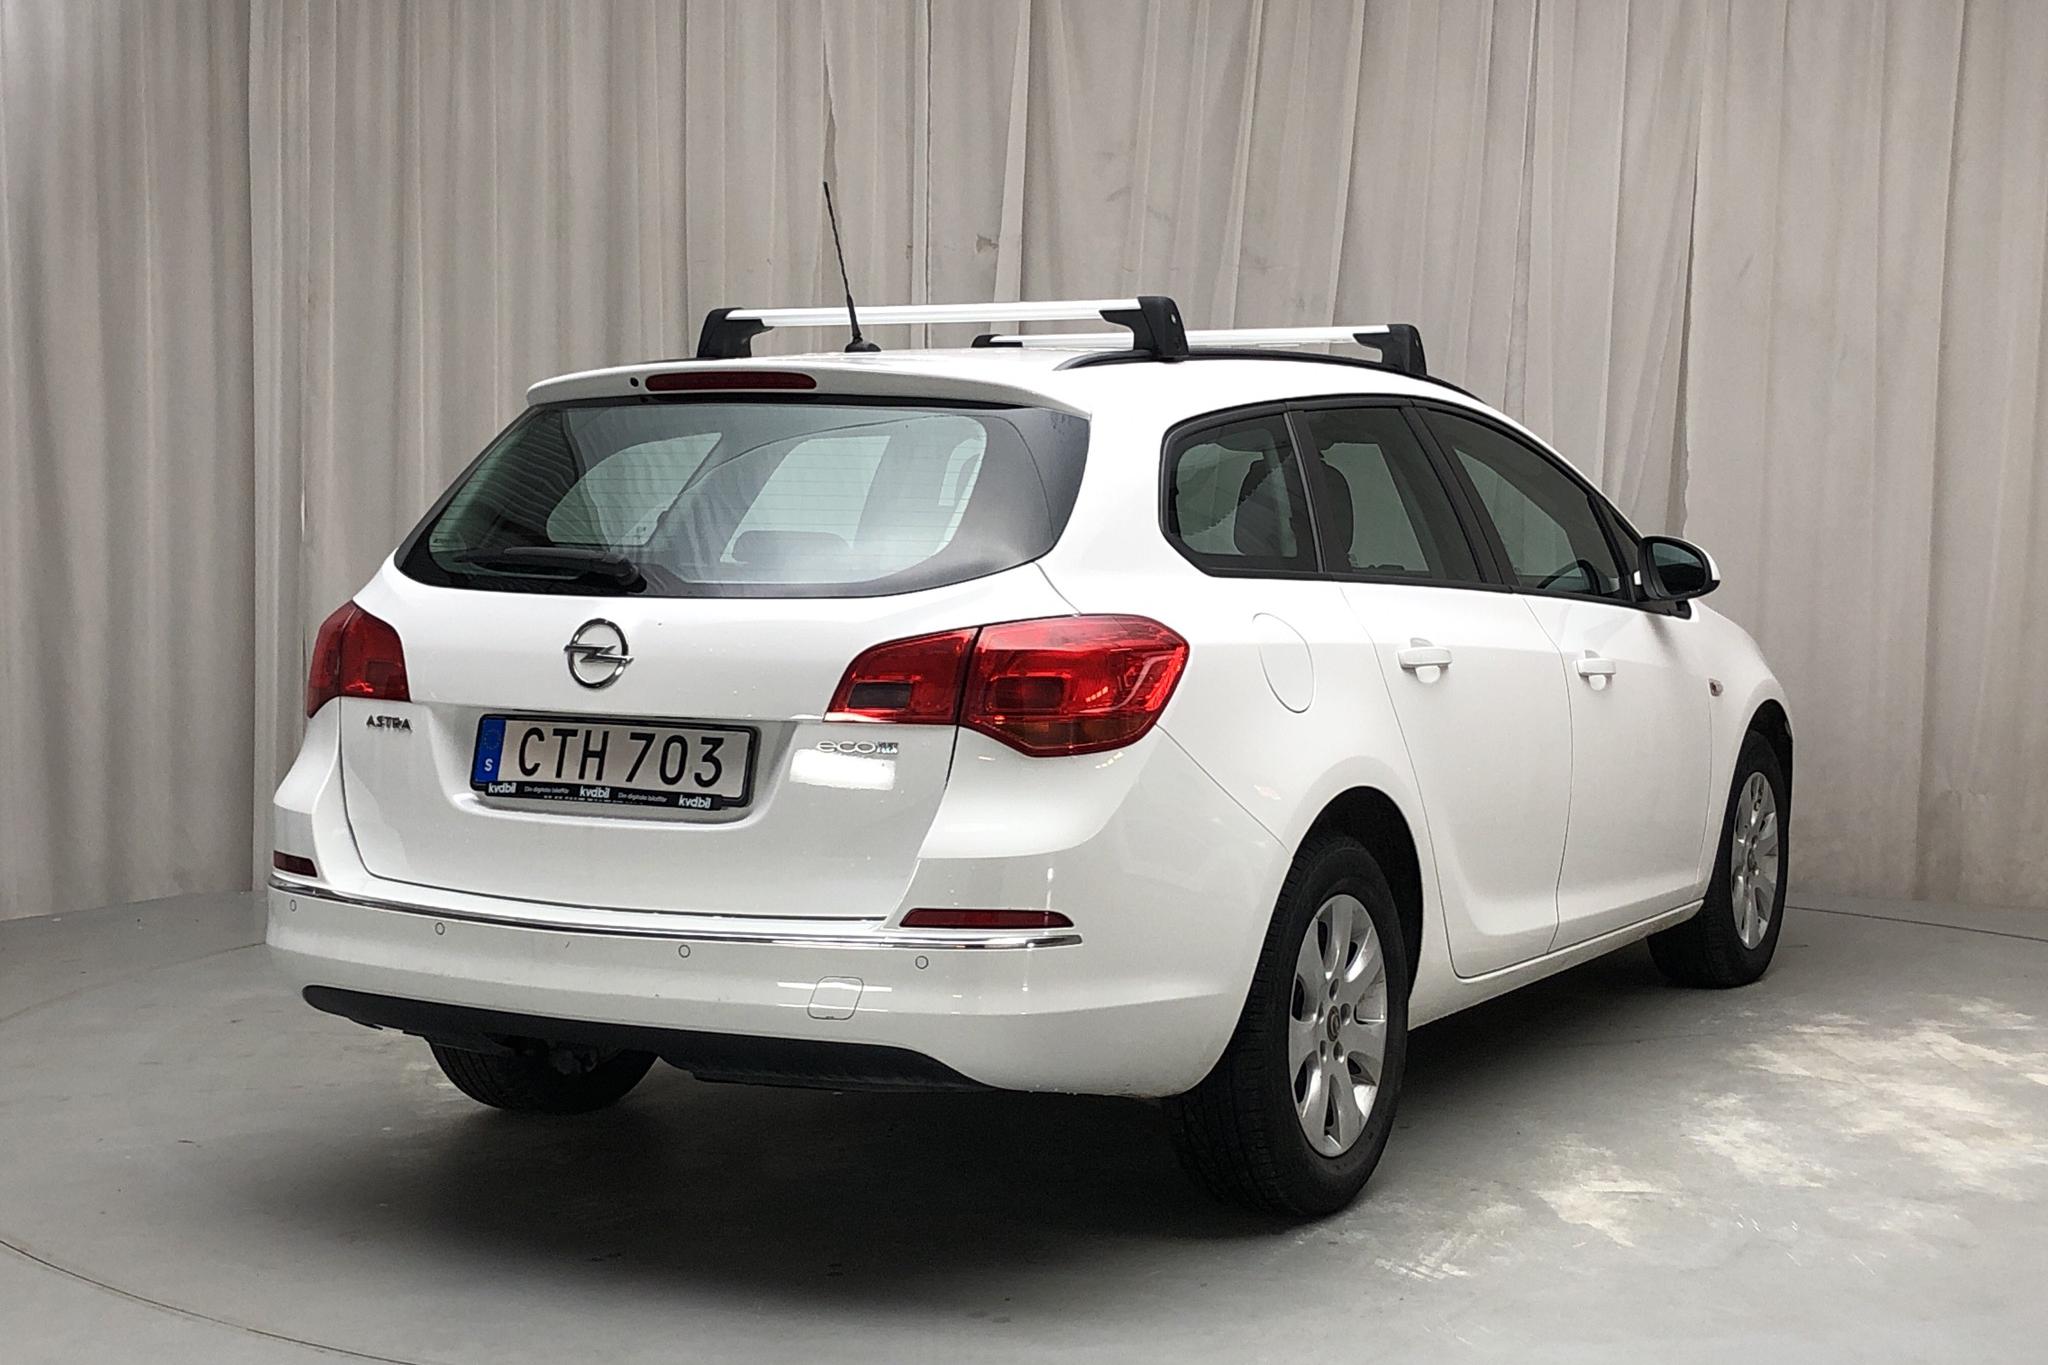 Opel Astra 1.6 CDTI ecoFLEX Sports Tourer (110hk) - 184 310 km - Manual - white - 2015